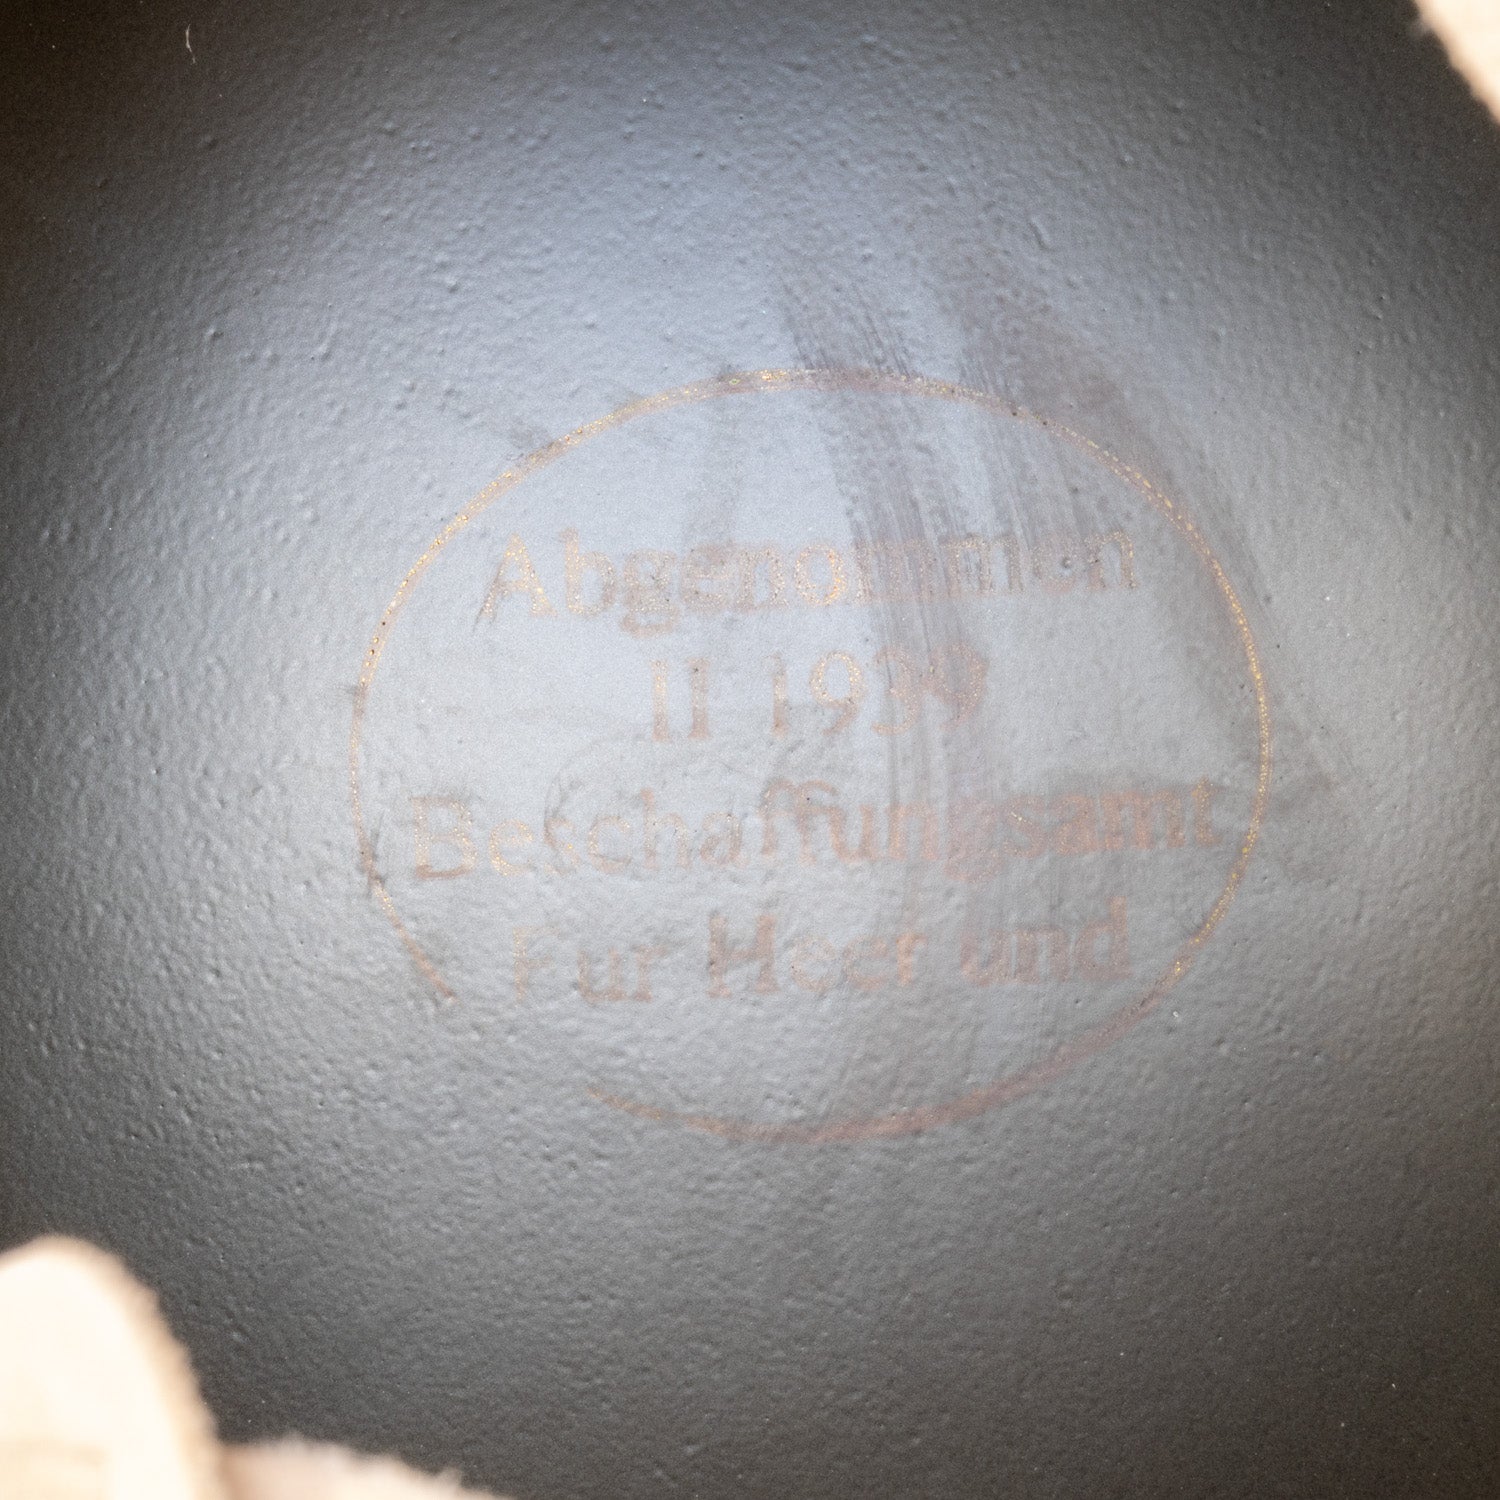 Reproduction du casque Allemand M40 vue en gros plan du marquage au fond de la coque